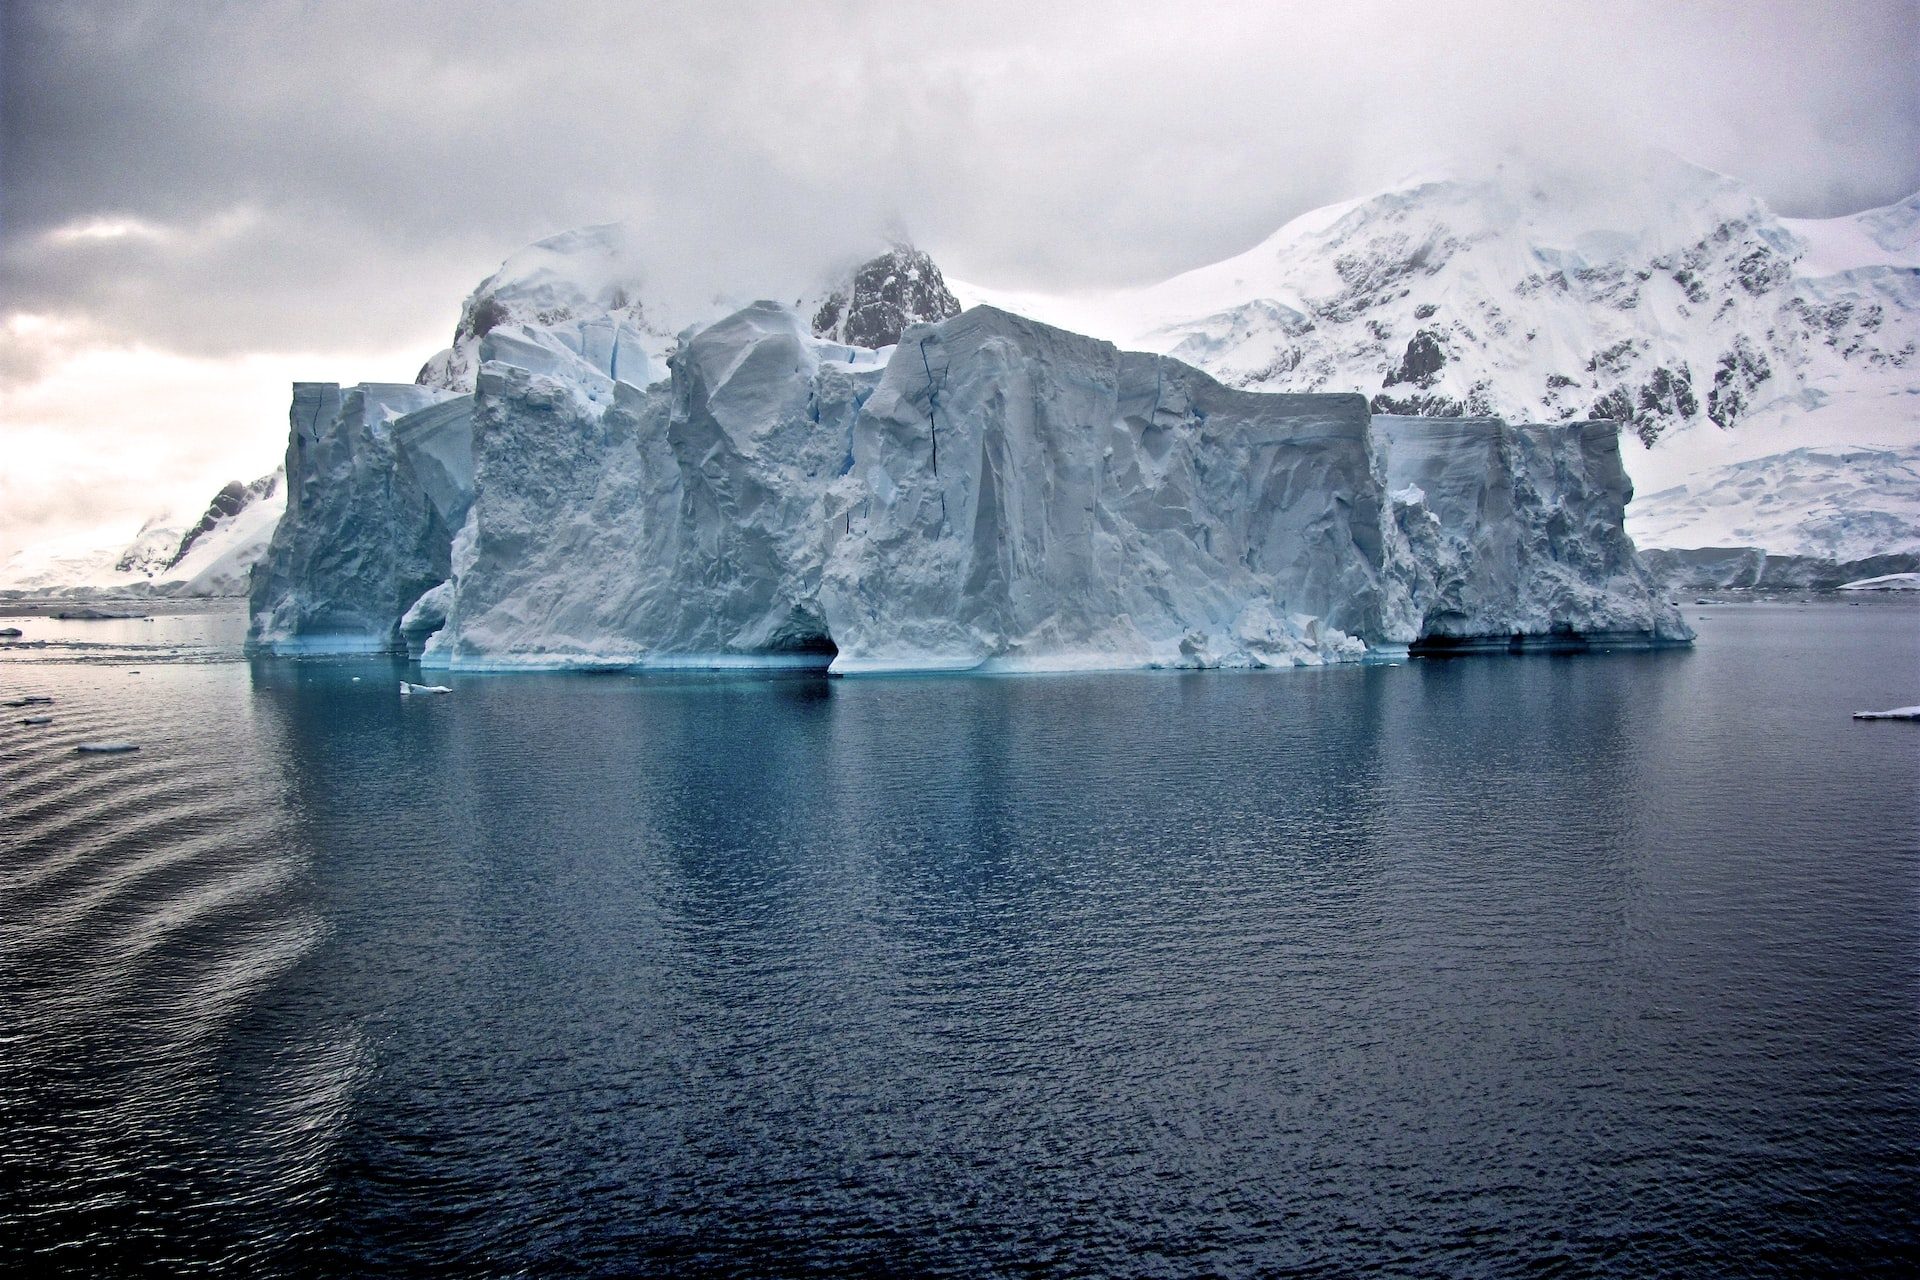 <p>Esta área possui gelo desde a Antártida O r i e n t a l e Ocidental até o Mar de Weddell, segundo a revista Nature Geoscience em sua reportagem.</p> <p>Foto: Unsplash - Hay Ruzesky</p>